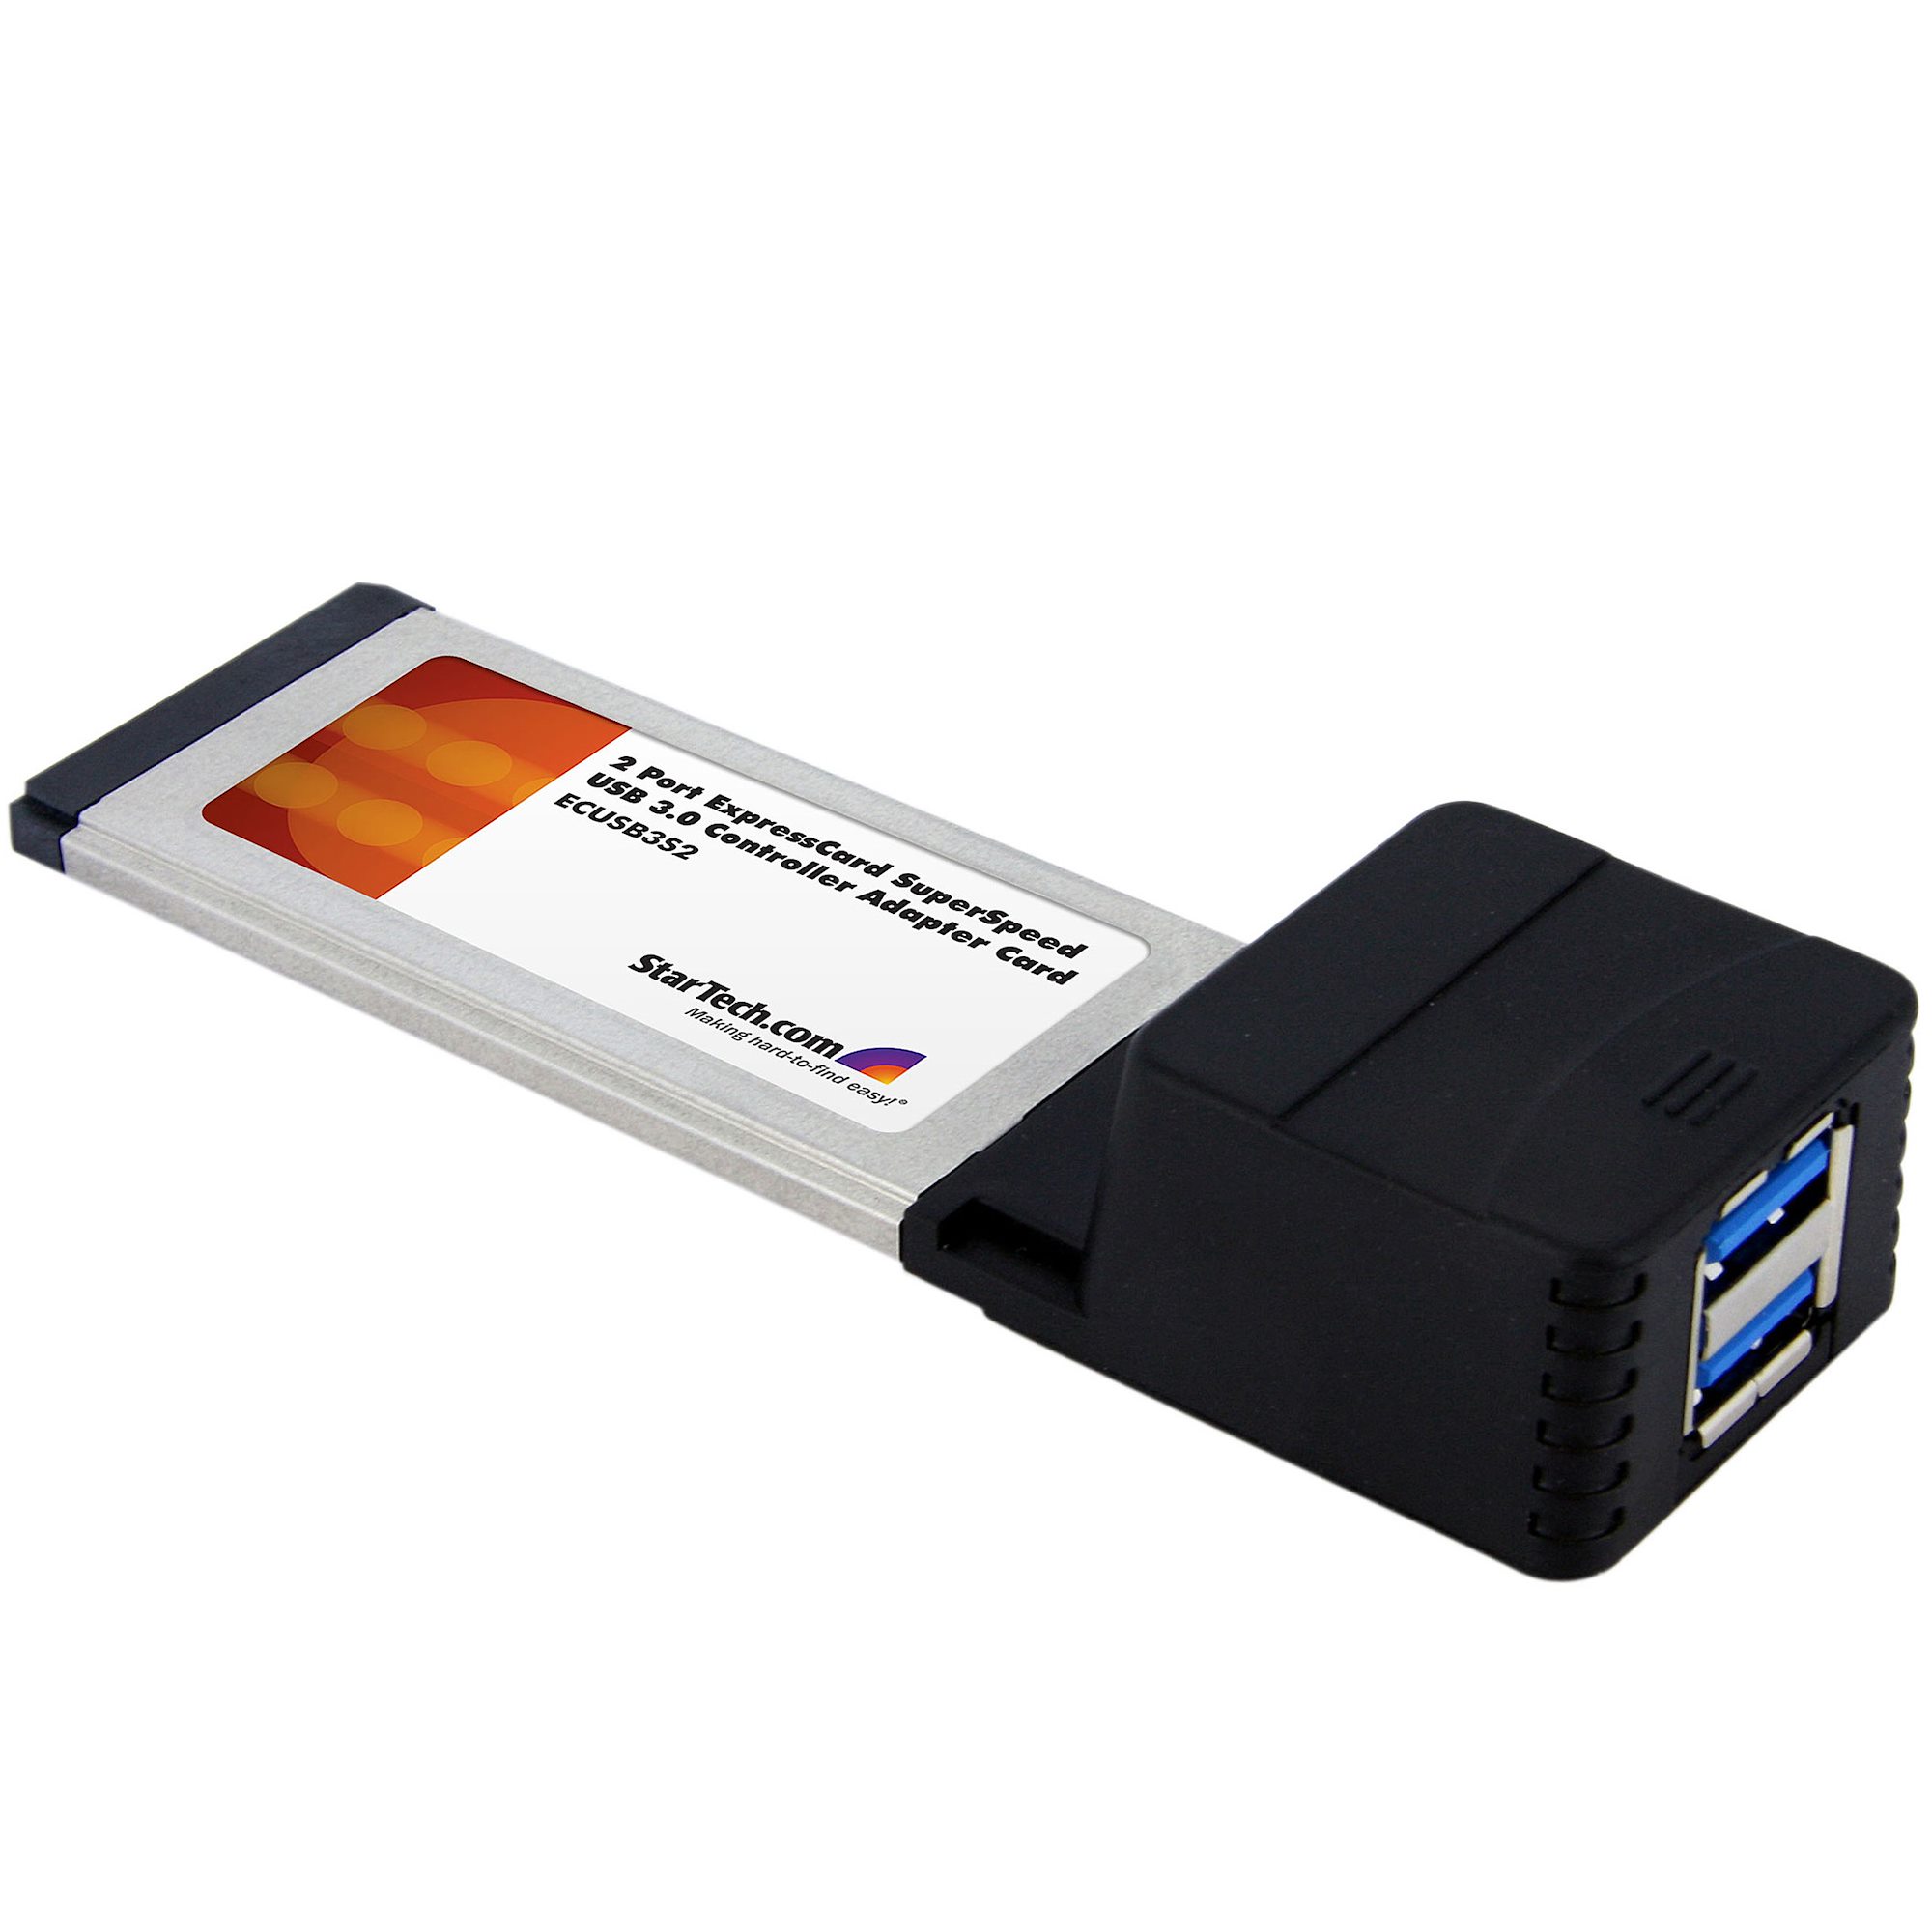 2 ExpressCard USB 3.0 Card w/ UASP - 3.0 Cards | StarTech.com